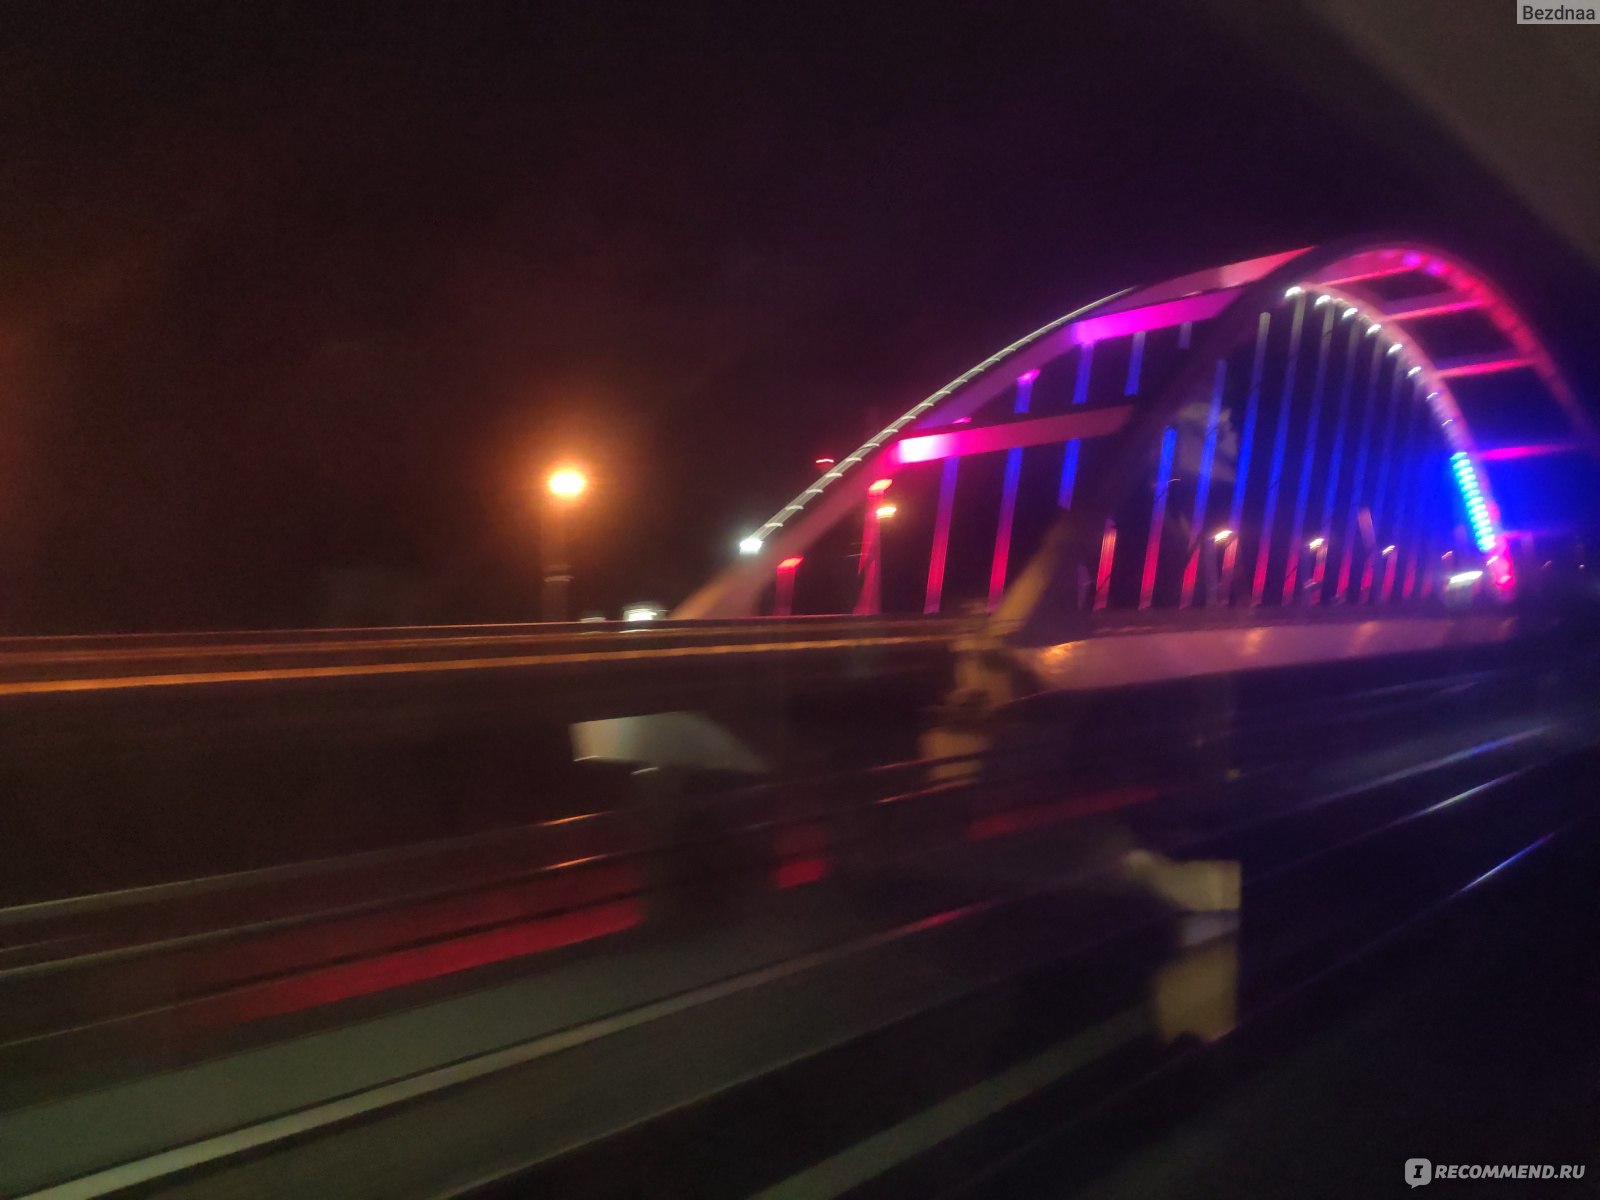 крымский мост фото ночью из поезда